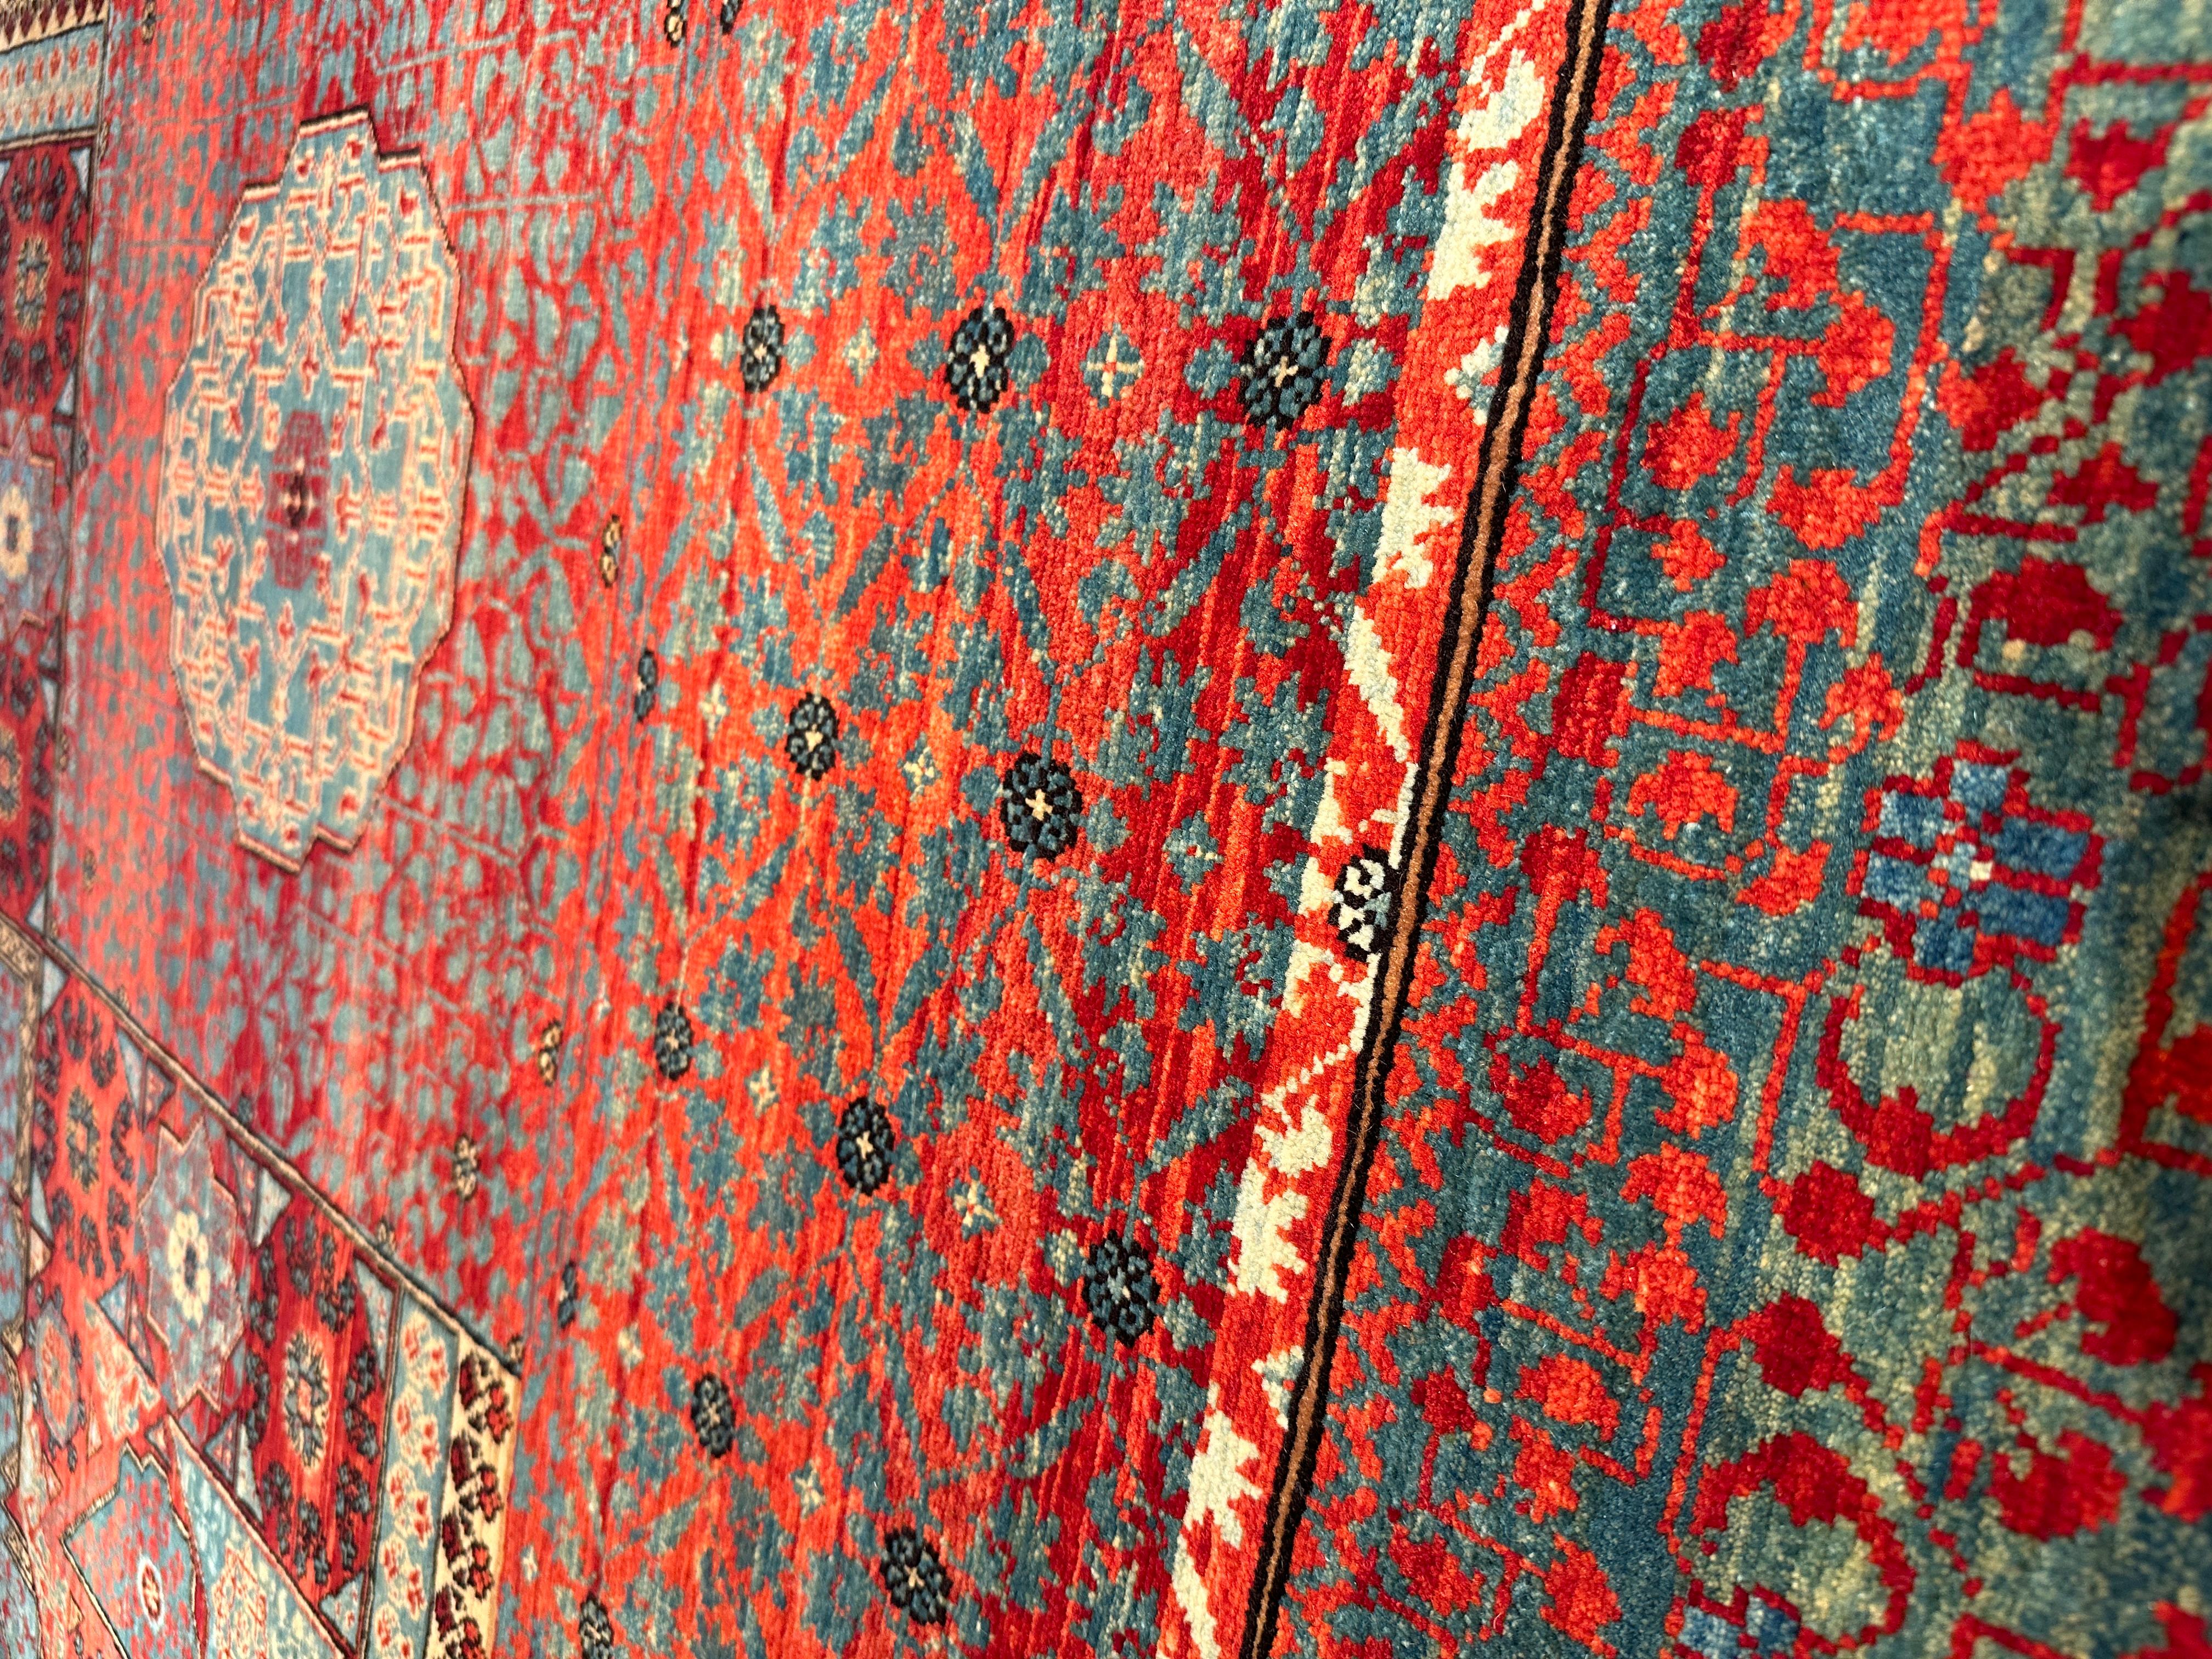 Die Quelle des Teppichs stammt aus dem Buch Völker, Angela, Die orientalischen Knüpfteppiche des MAK, Wien: Böhlau, 2001: 42-5. Dieser Teppich mit dem zentralen Stern wurde im frühen 16. Jahrhundert von Mamluken-Sultanen in Kairo, Ägypten,